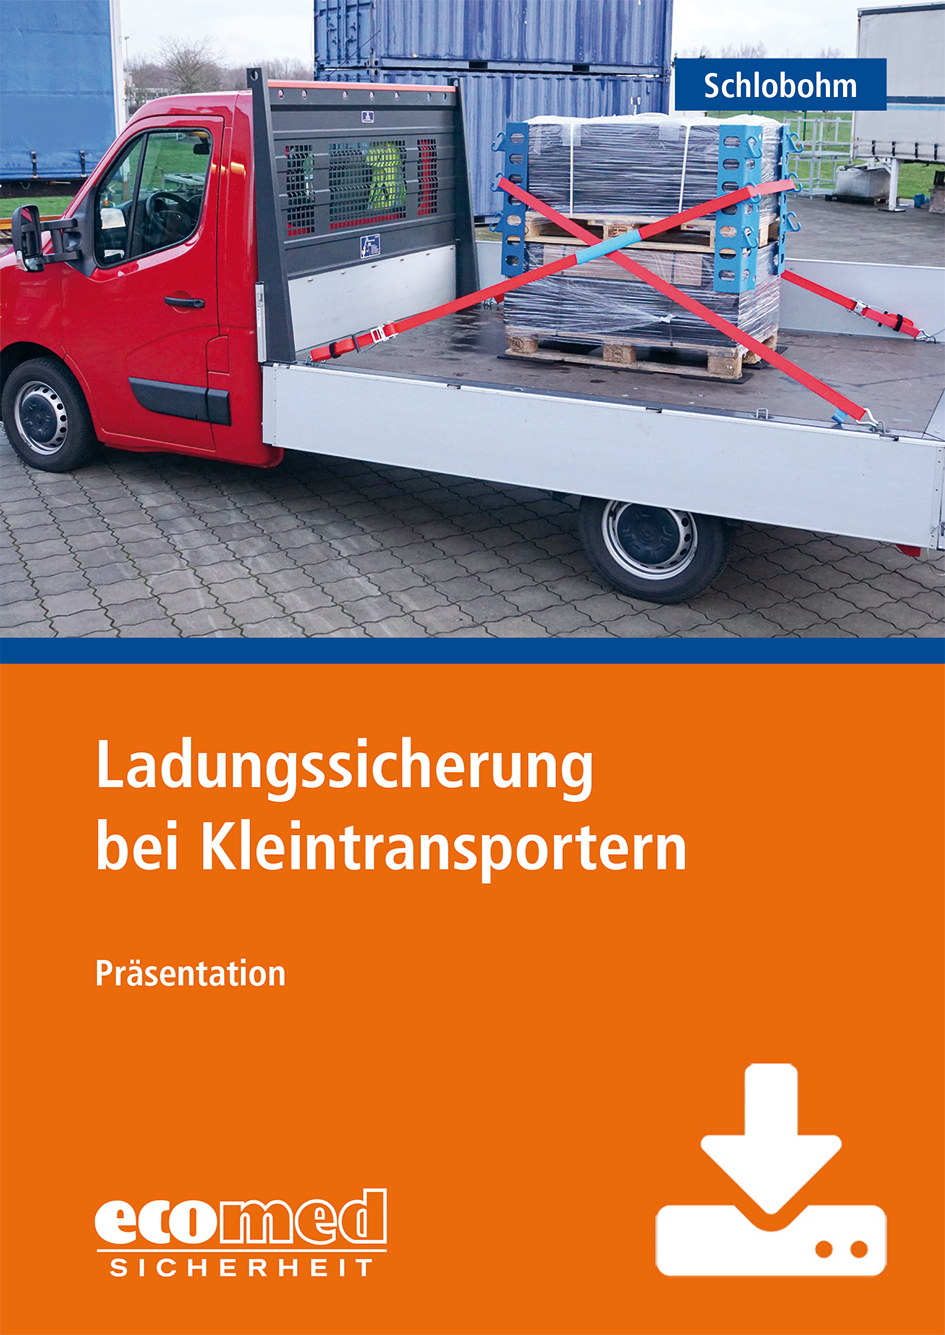 Ladungssicherung bei Kleintransportern - Präsentation (Download)